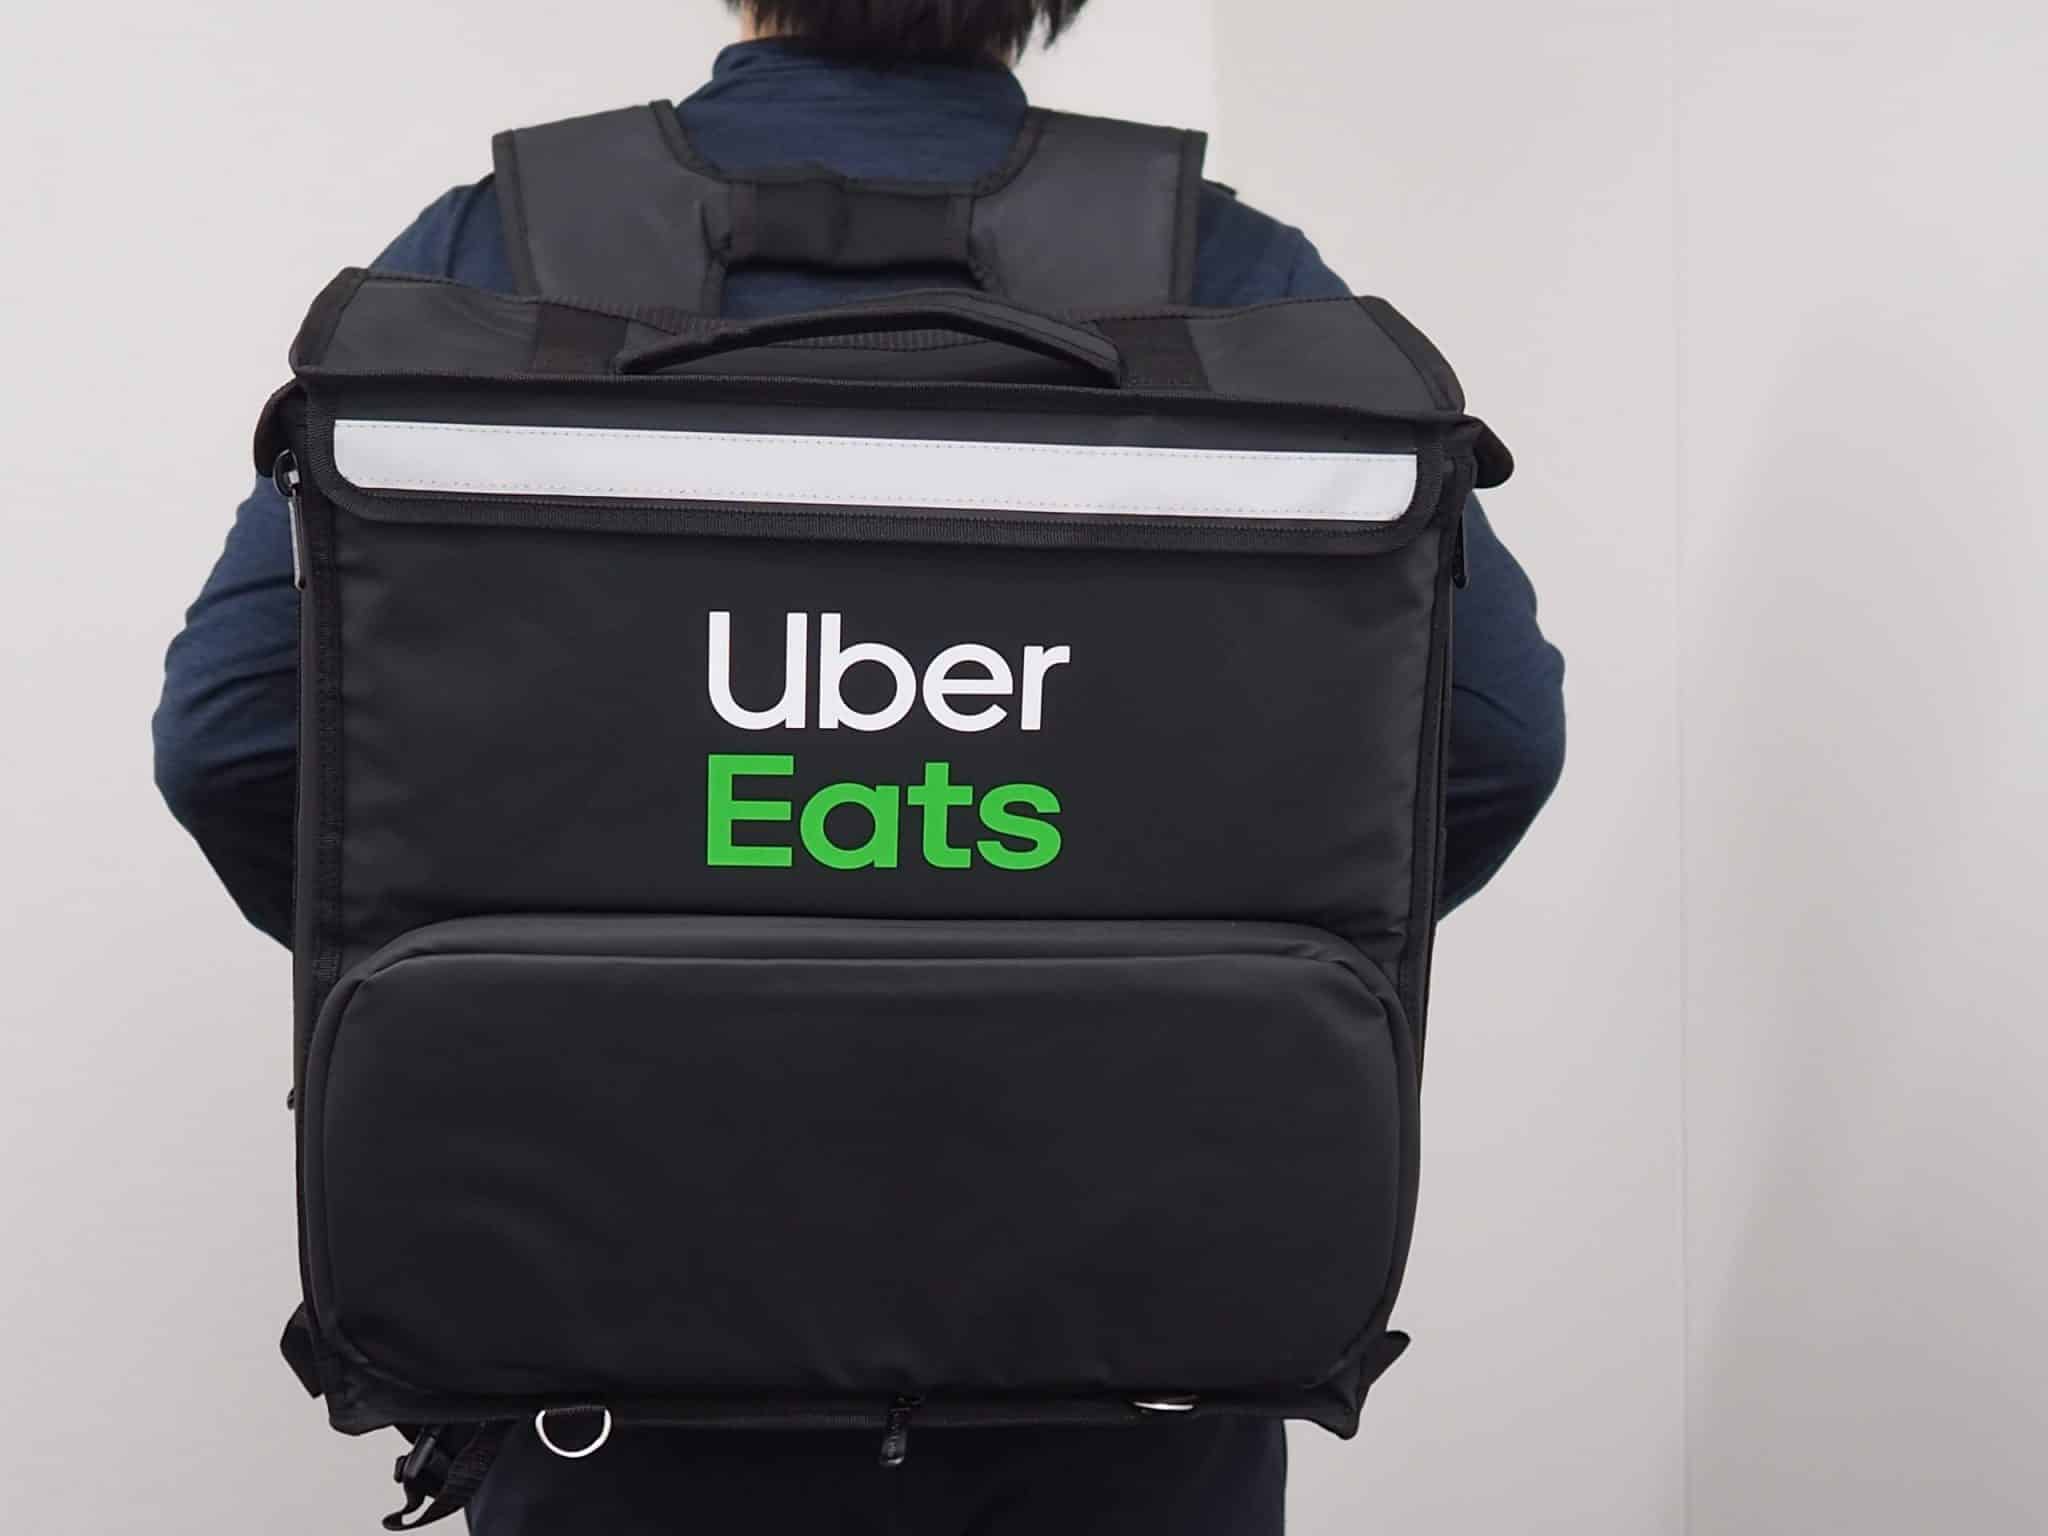 Uber Eats(ウーバーイーツ)バッグをAmazon(アマゾン)で購入する方法